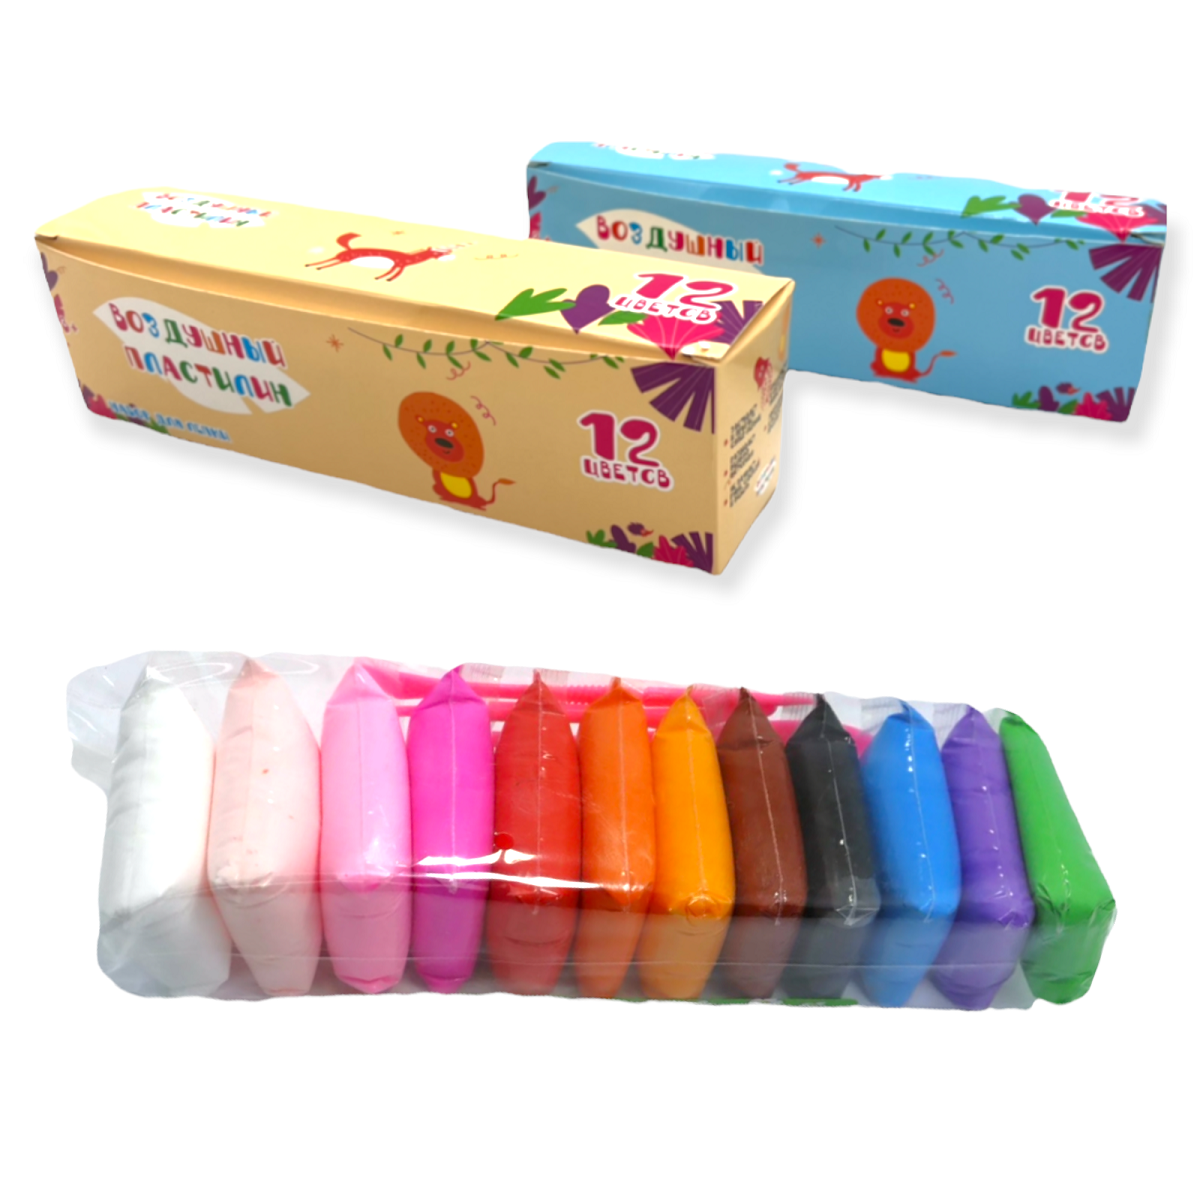 Воздушный пластилин Парам-пампам 12 цветов в подарочной упаковке с инструментами - фото 6